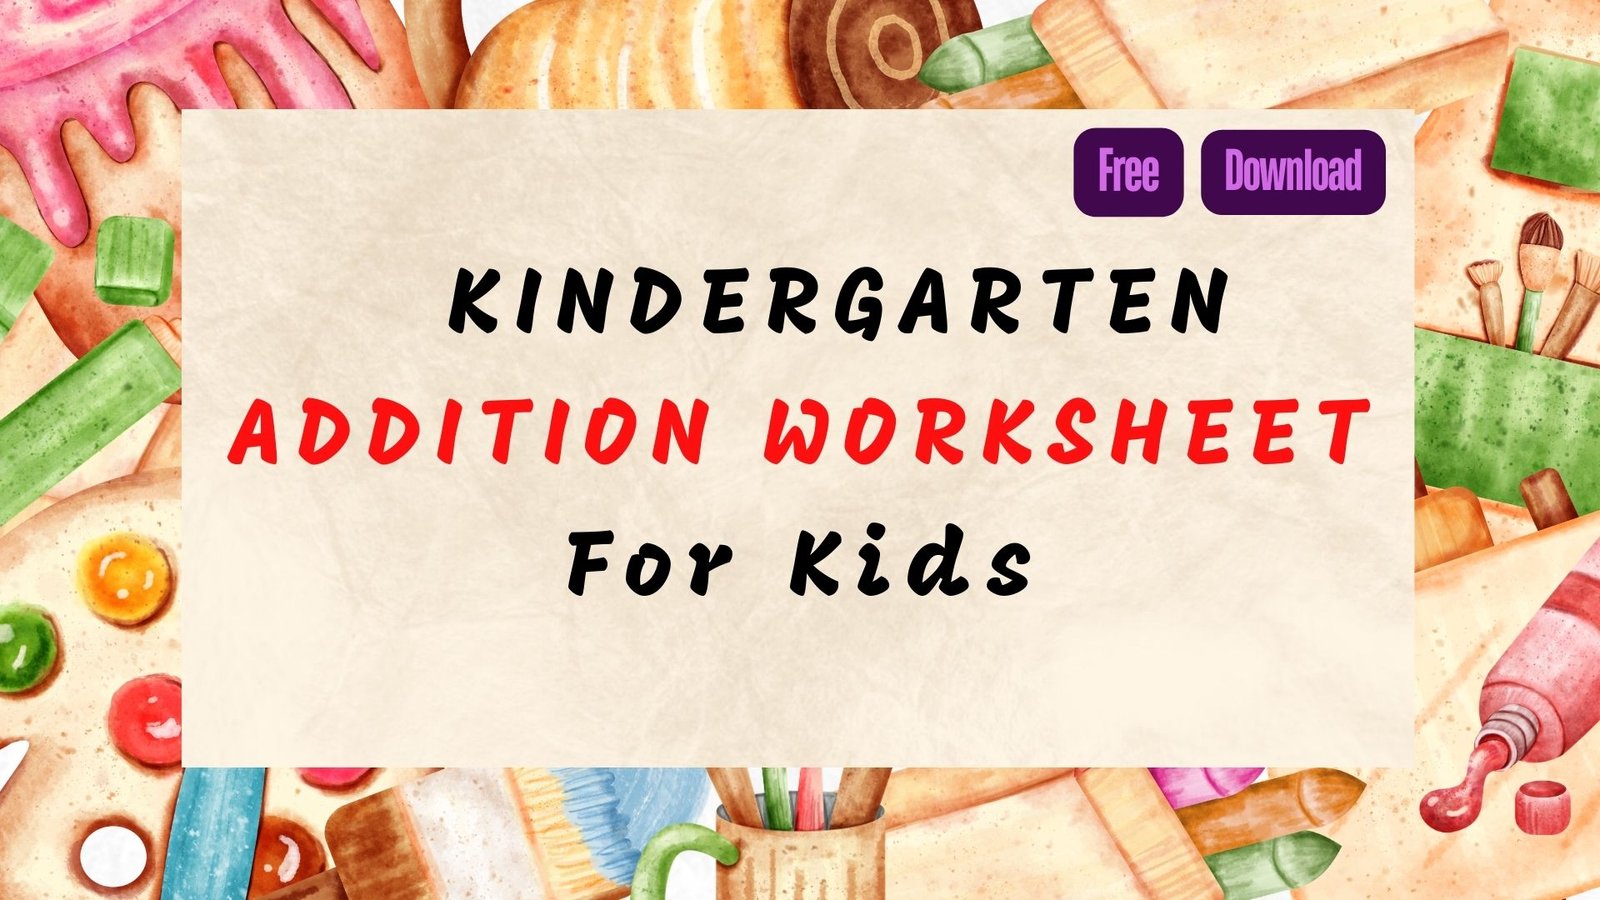 Kindgarten Addition Worksheet For  Kids